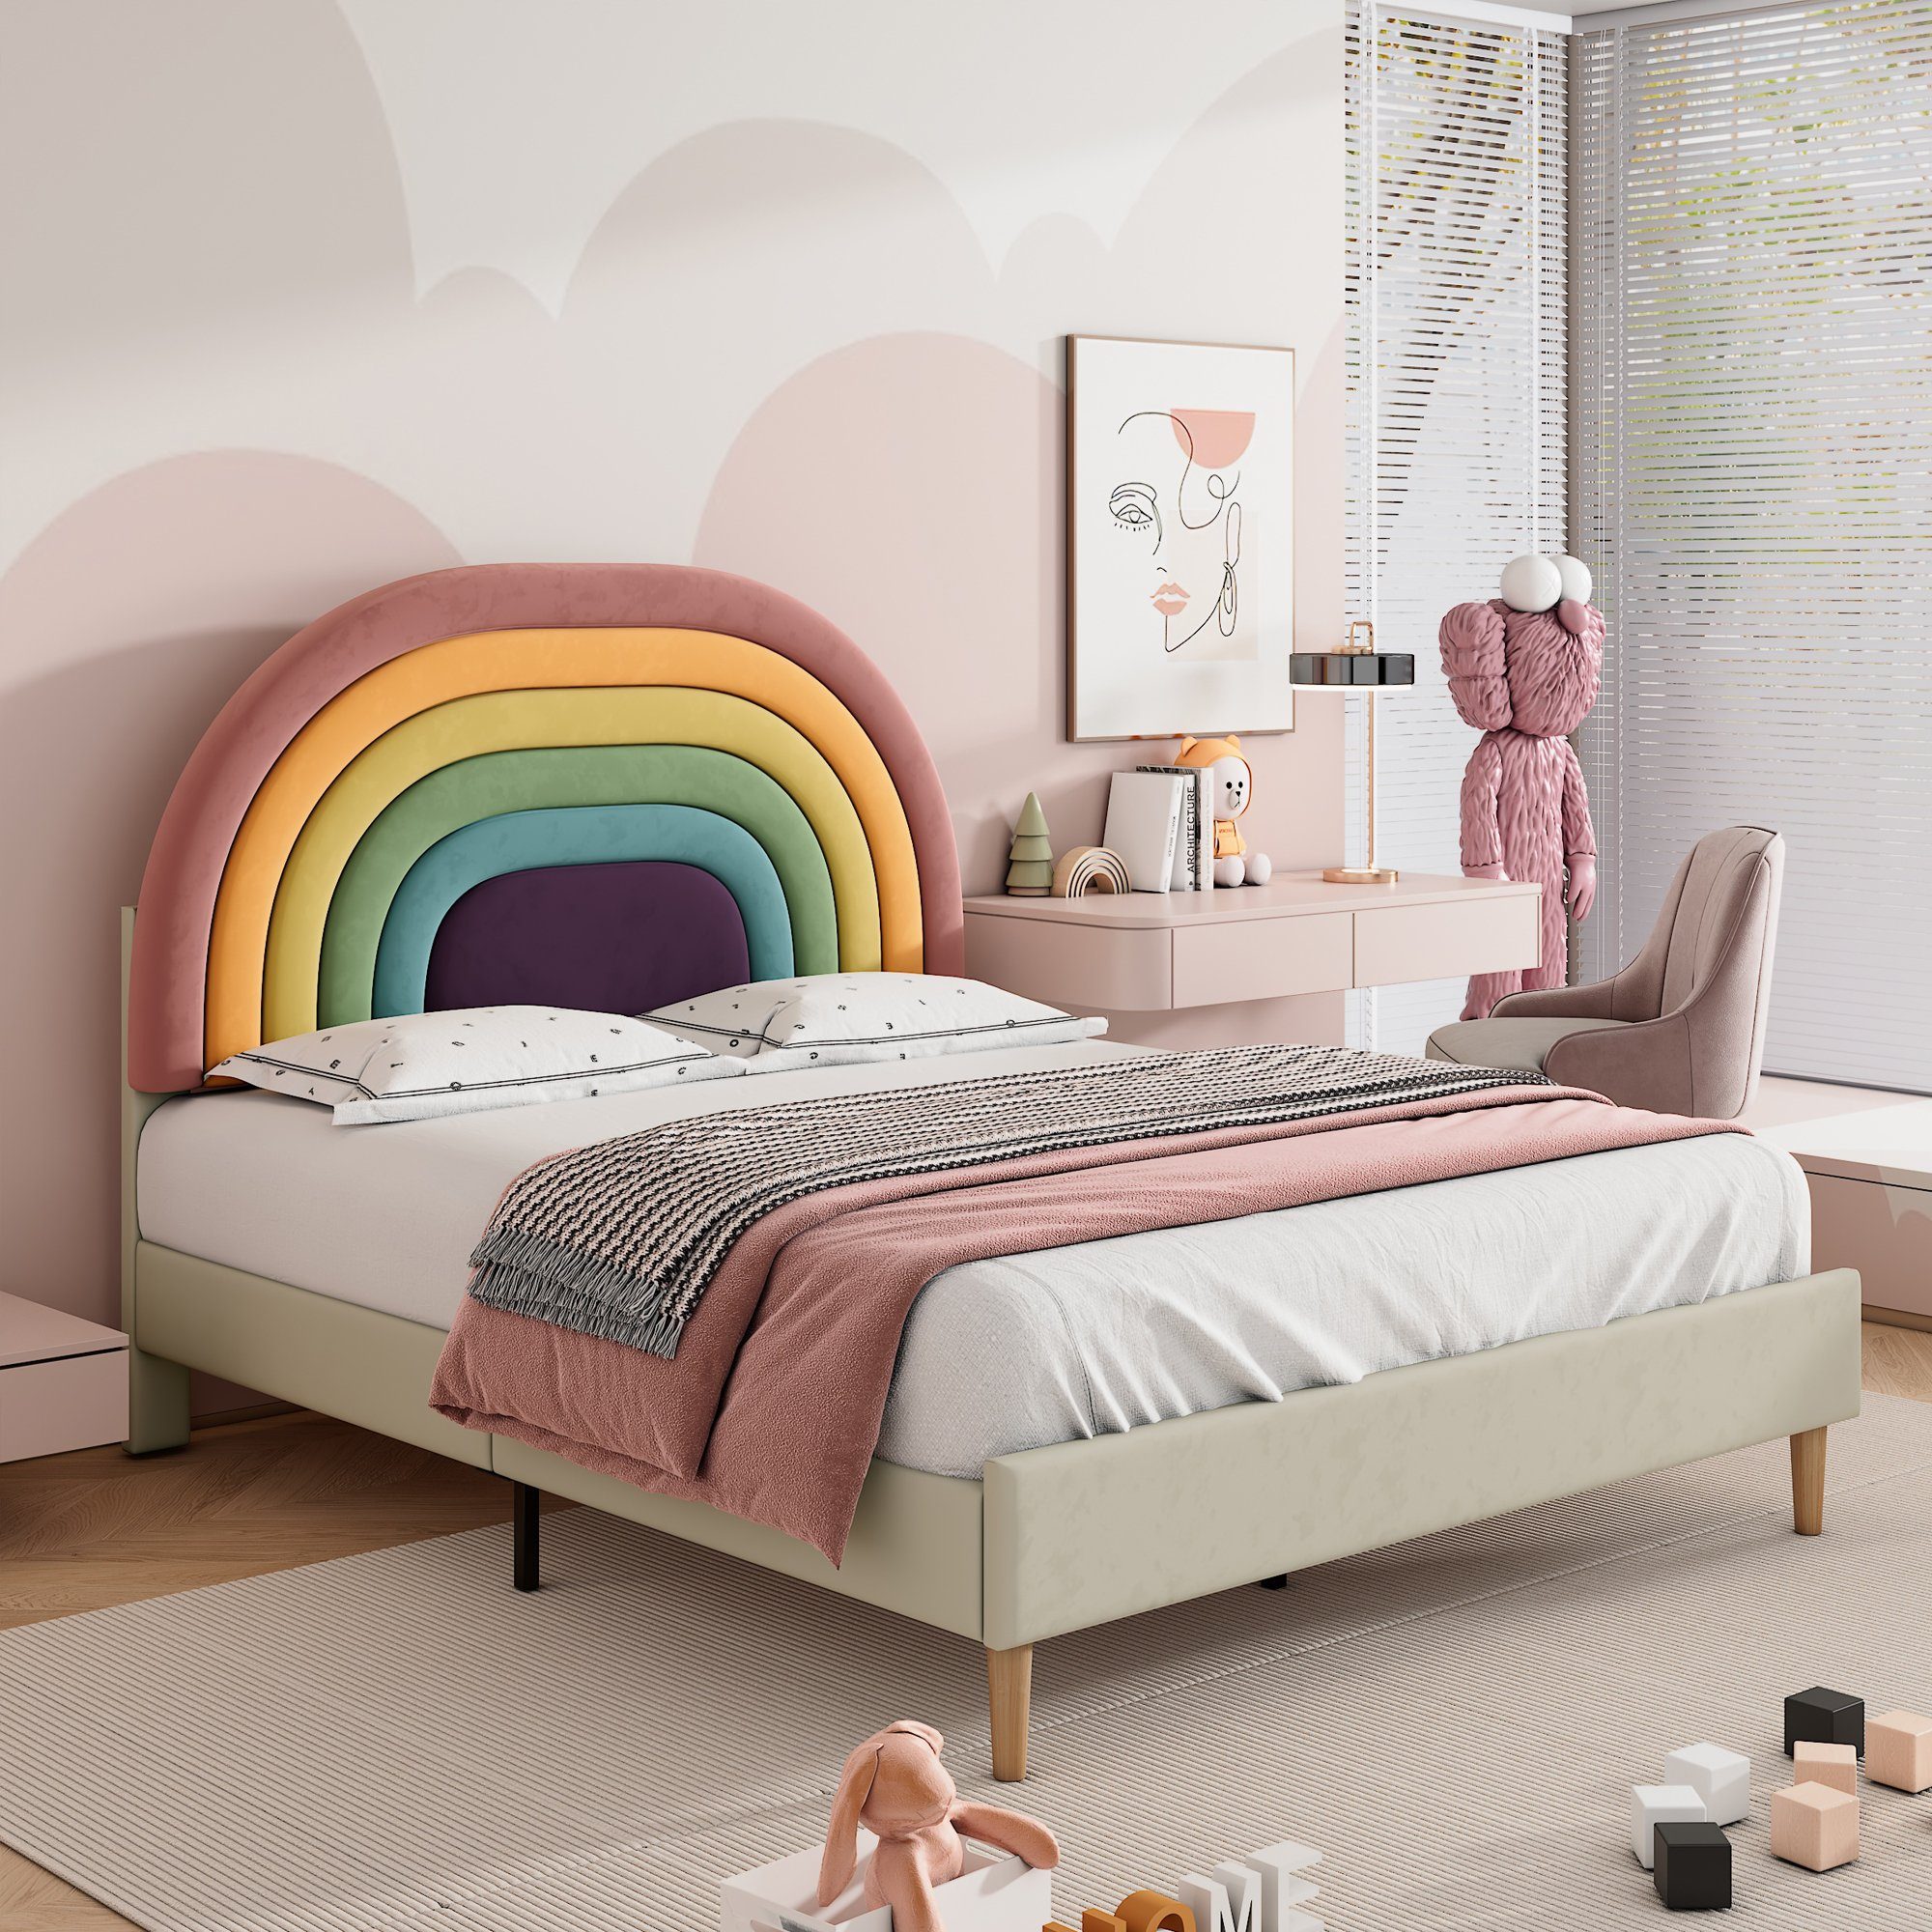 Flieks Polsterbett, Kinderbett mit verstellbarem Regenbogen-Kopfteil 140x200cm Samt beige